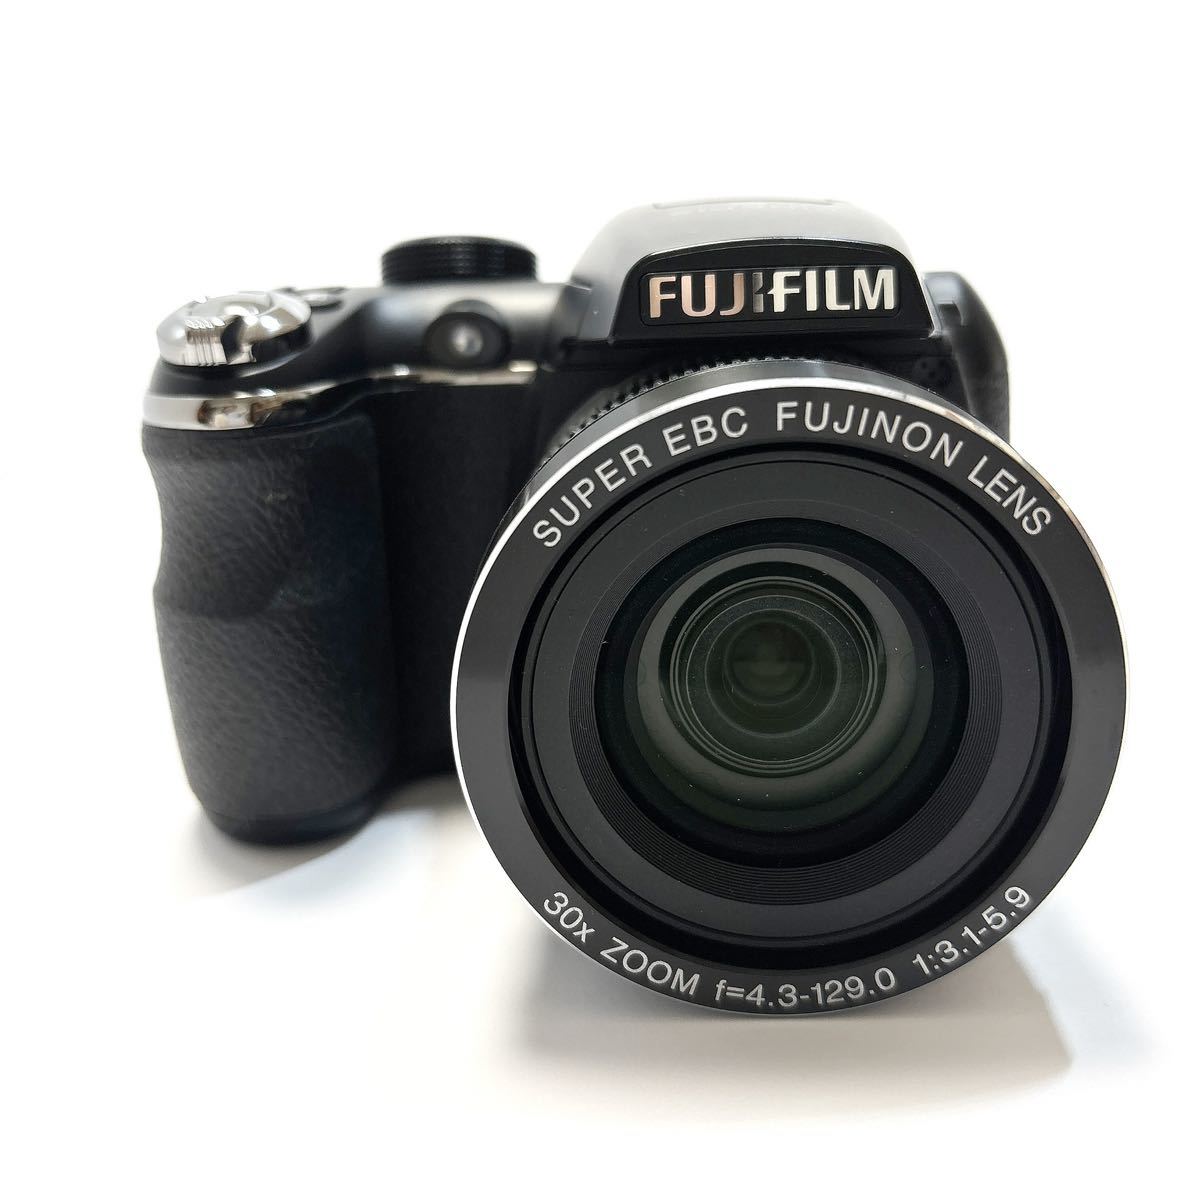 FUJIFILM フジフィルム FinePix S4500 ファインピックス 黒 ブラック コンパクトデジタルカメラ alpひ1130_画像2